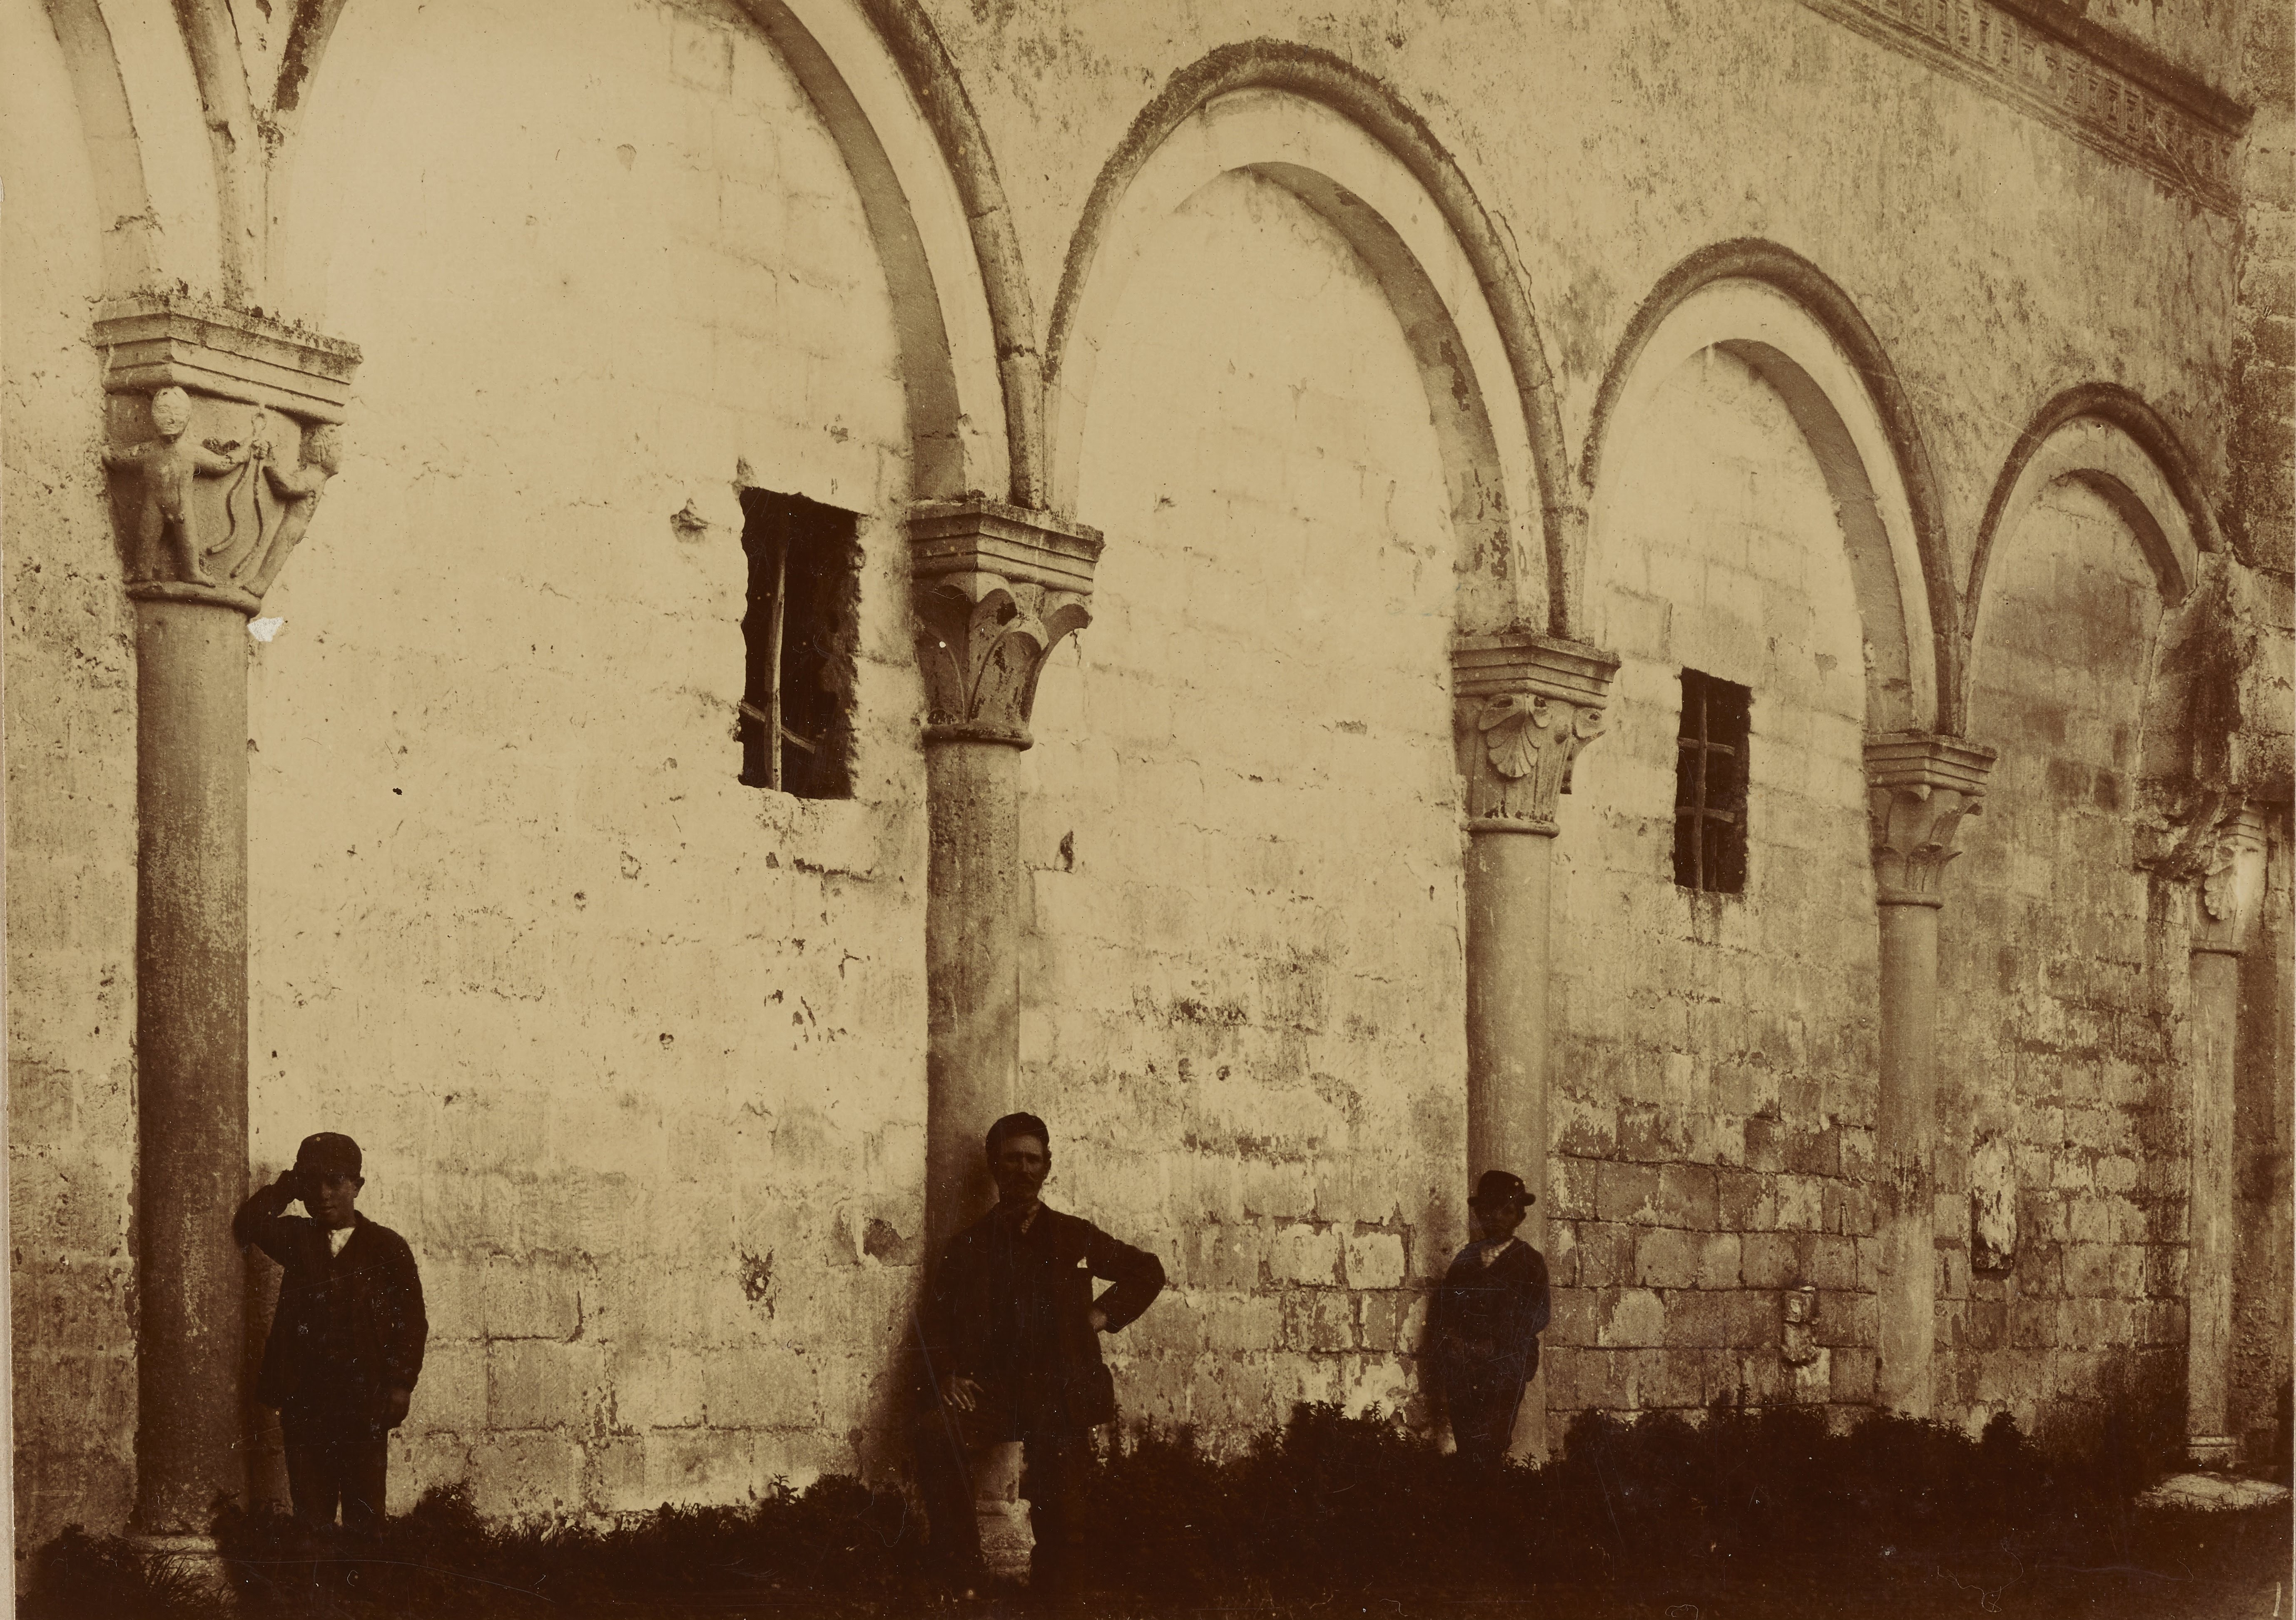 Denegri & C., Montescaglioso - Abbazia benedettina di S. Michele Arcangelo, secondo cortile, particolare degli archi, 1891-1910, aristotipo, MPI6079602